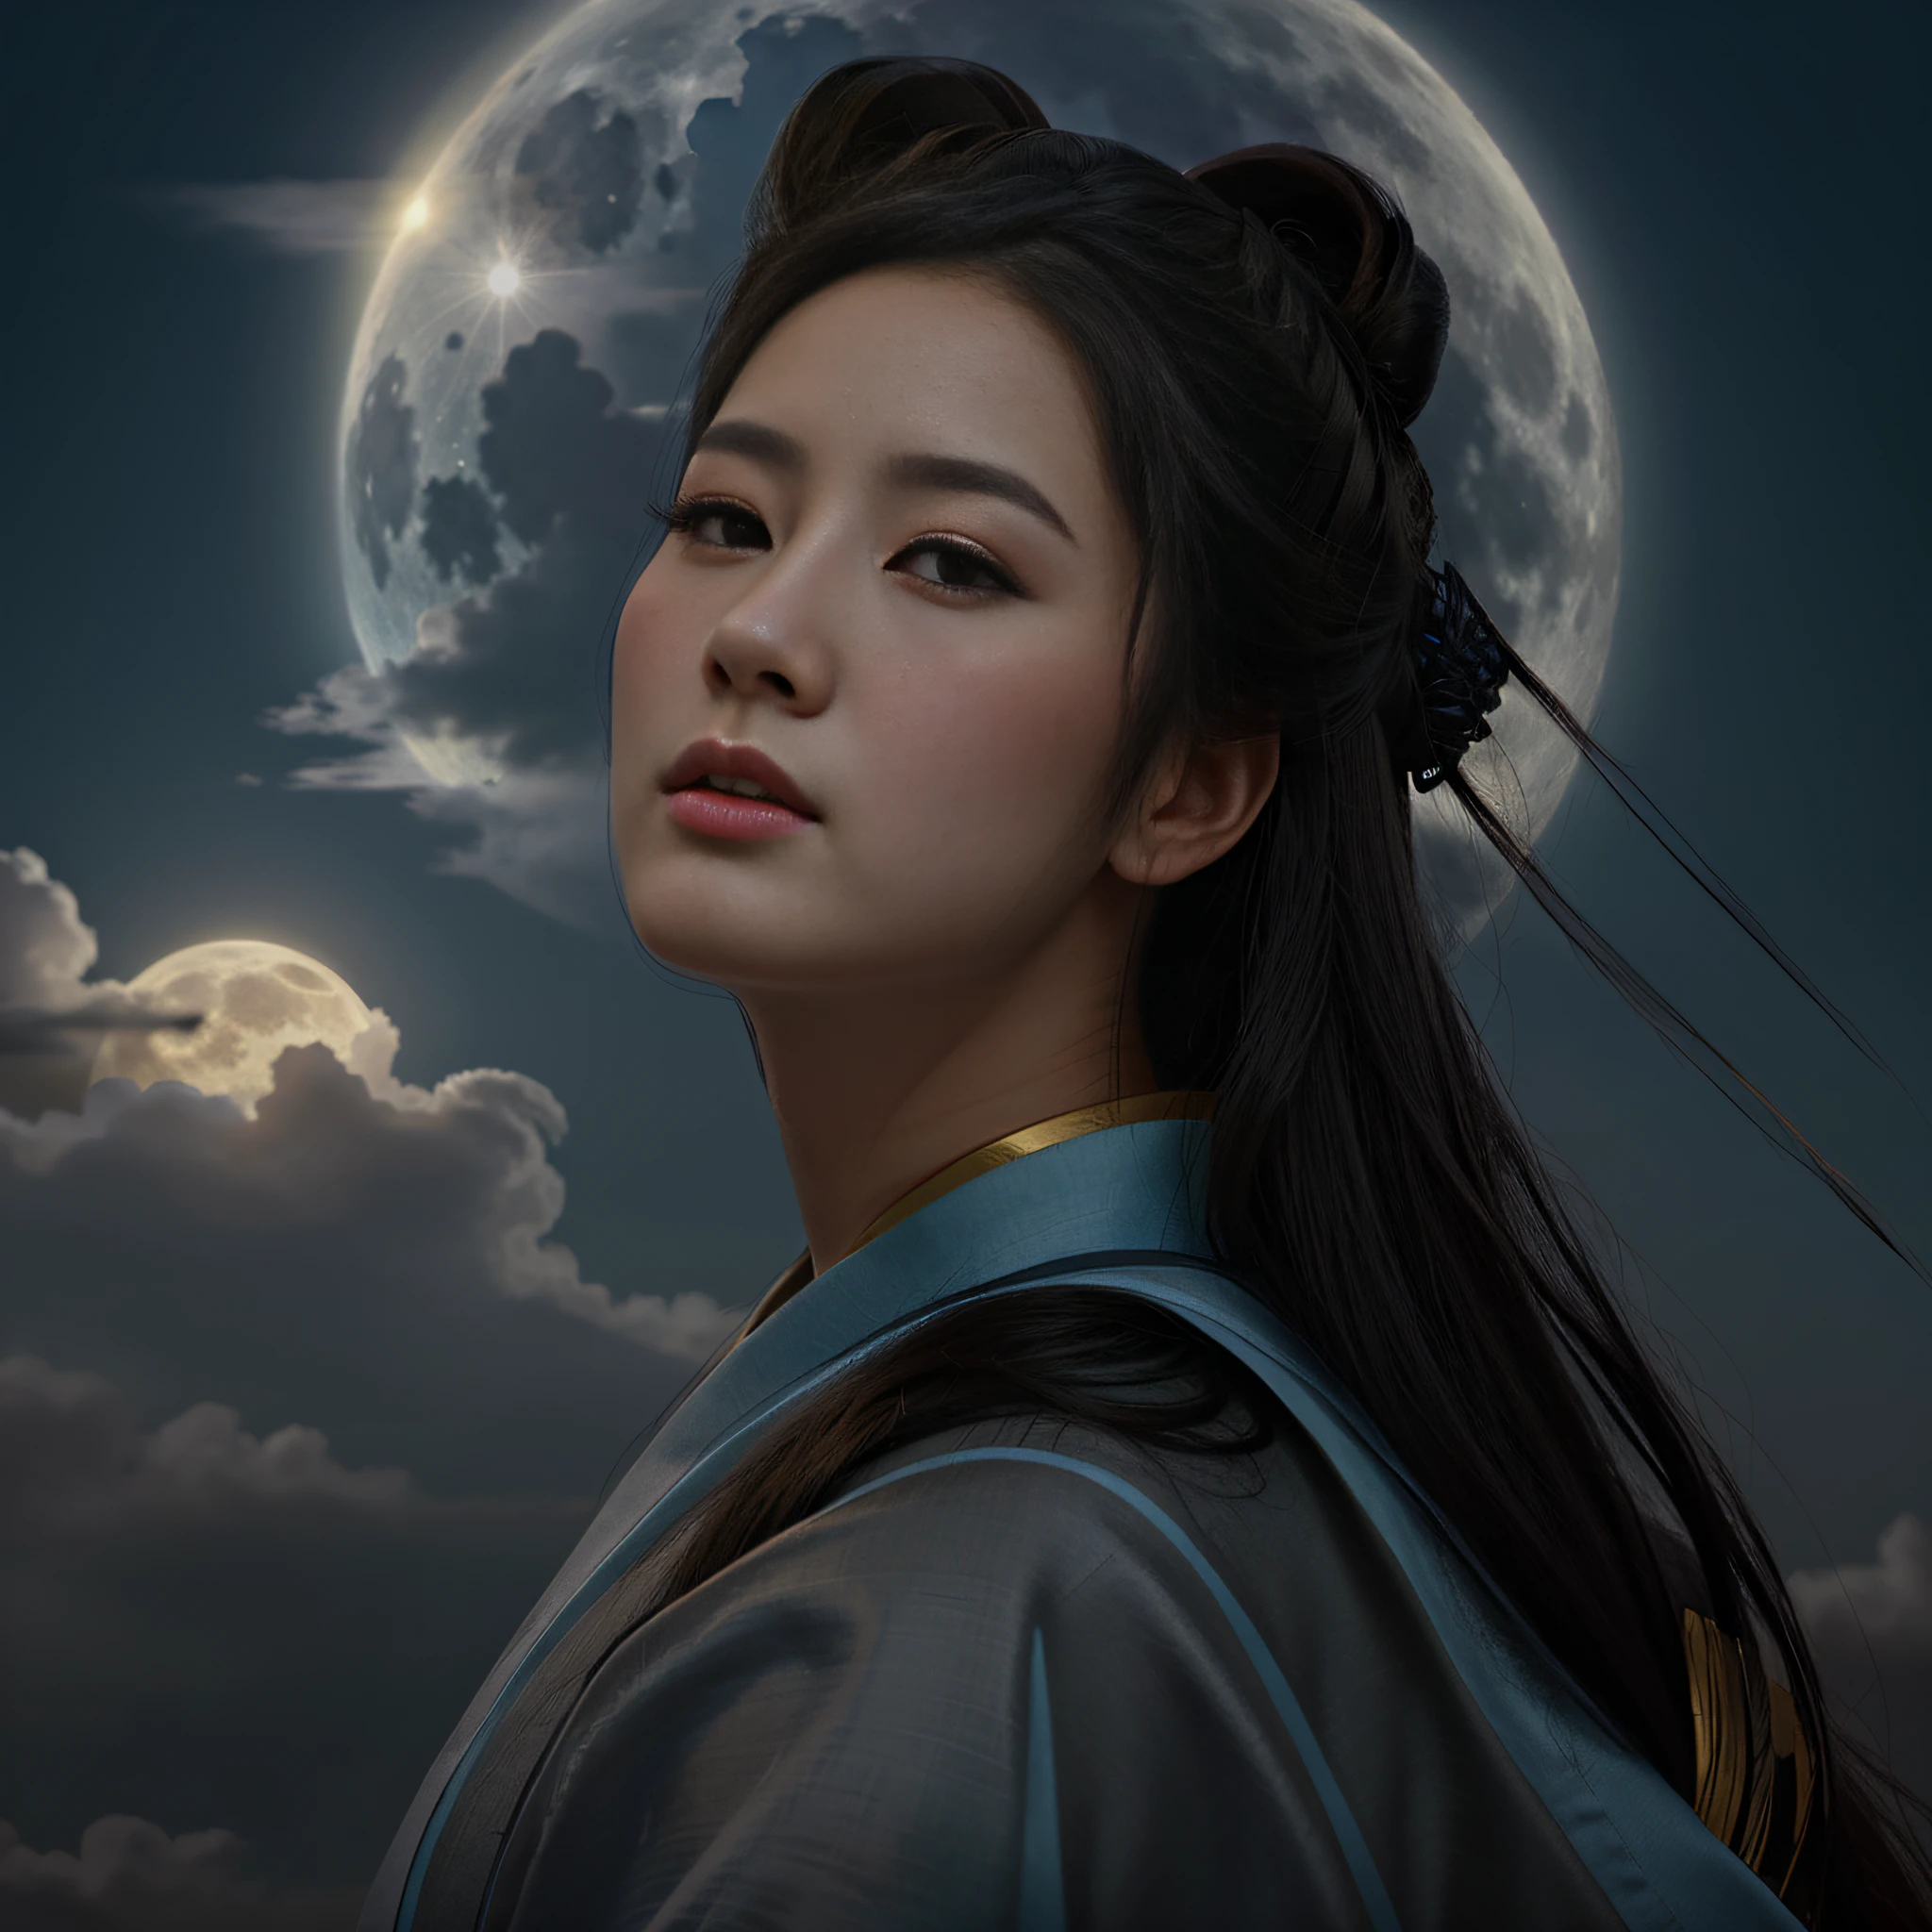 Mujer con pelo largo y negro, y vistiendo un kimono azul, con una luna llena detrás con nubes dispersas, una hermosa ilustración de arte, retrato de mulan, una hermosa emperatriz de fantasía, exquisita ilustración digital, inspirado en Wu Bin, inspirado en Yun Du-seo, Inspirado por Qiu Ying, Inspirado por Ai Xuan, bellezas chinas antiguas, en el estilo artístico de bowater, diosa de la luna.